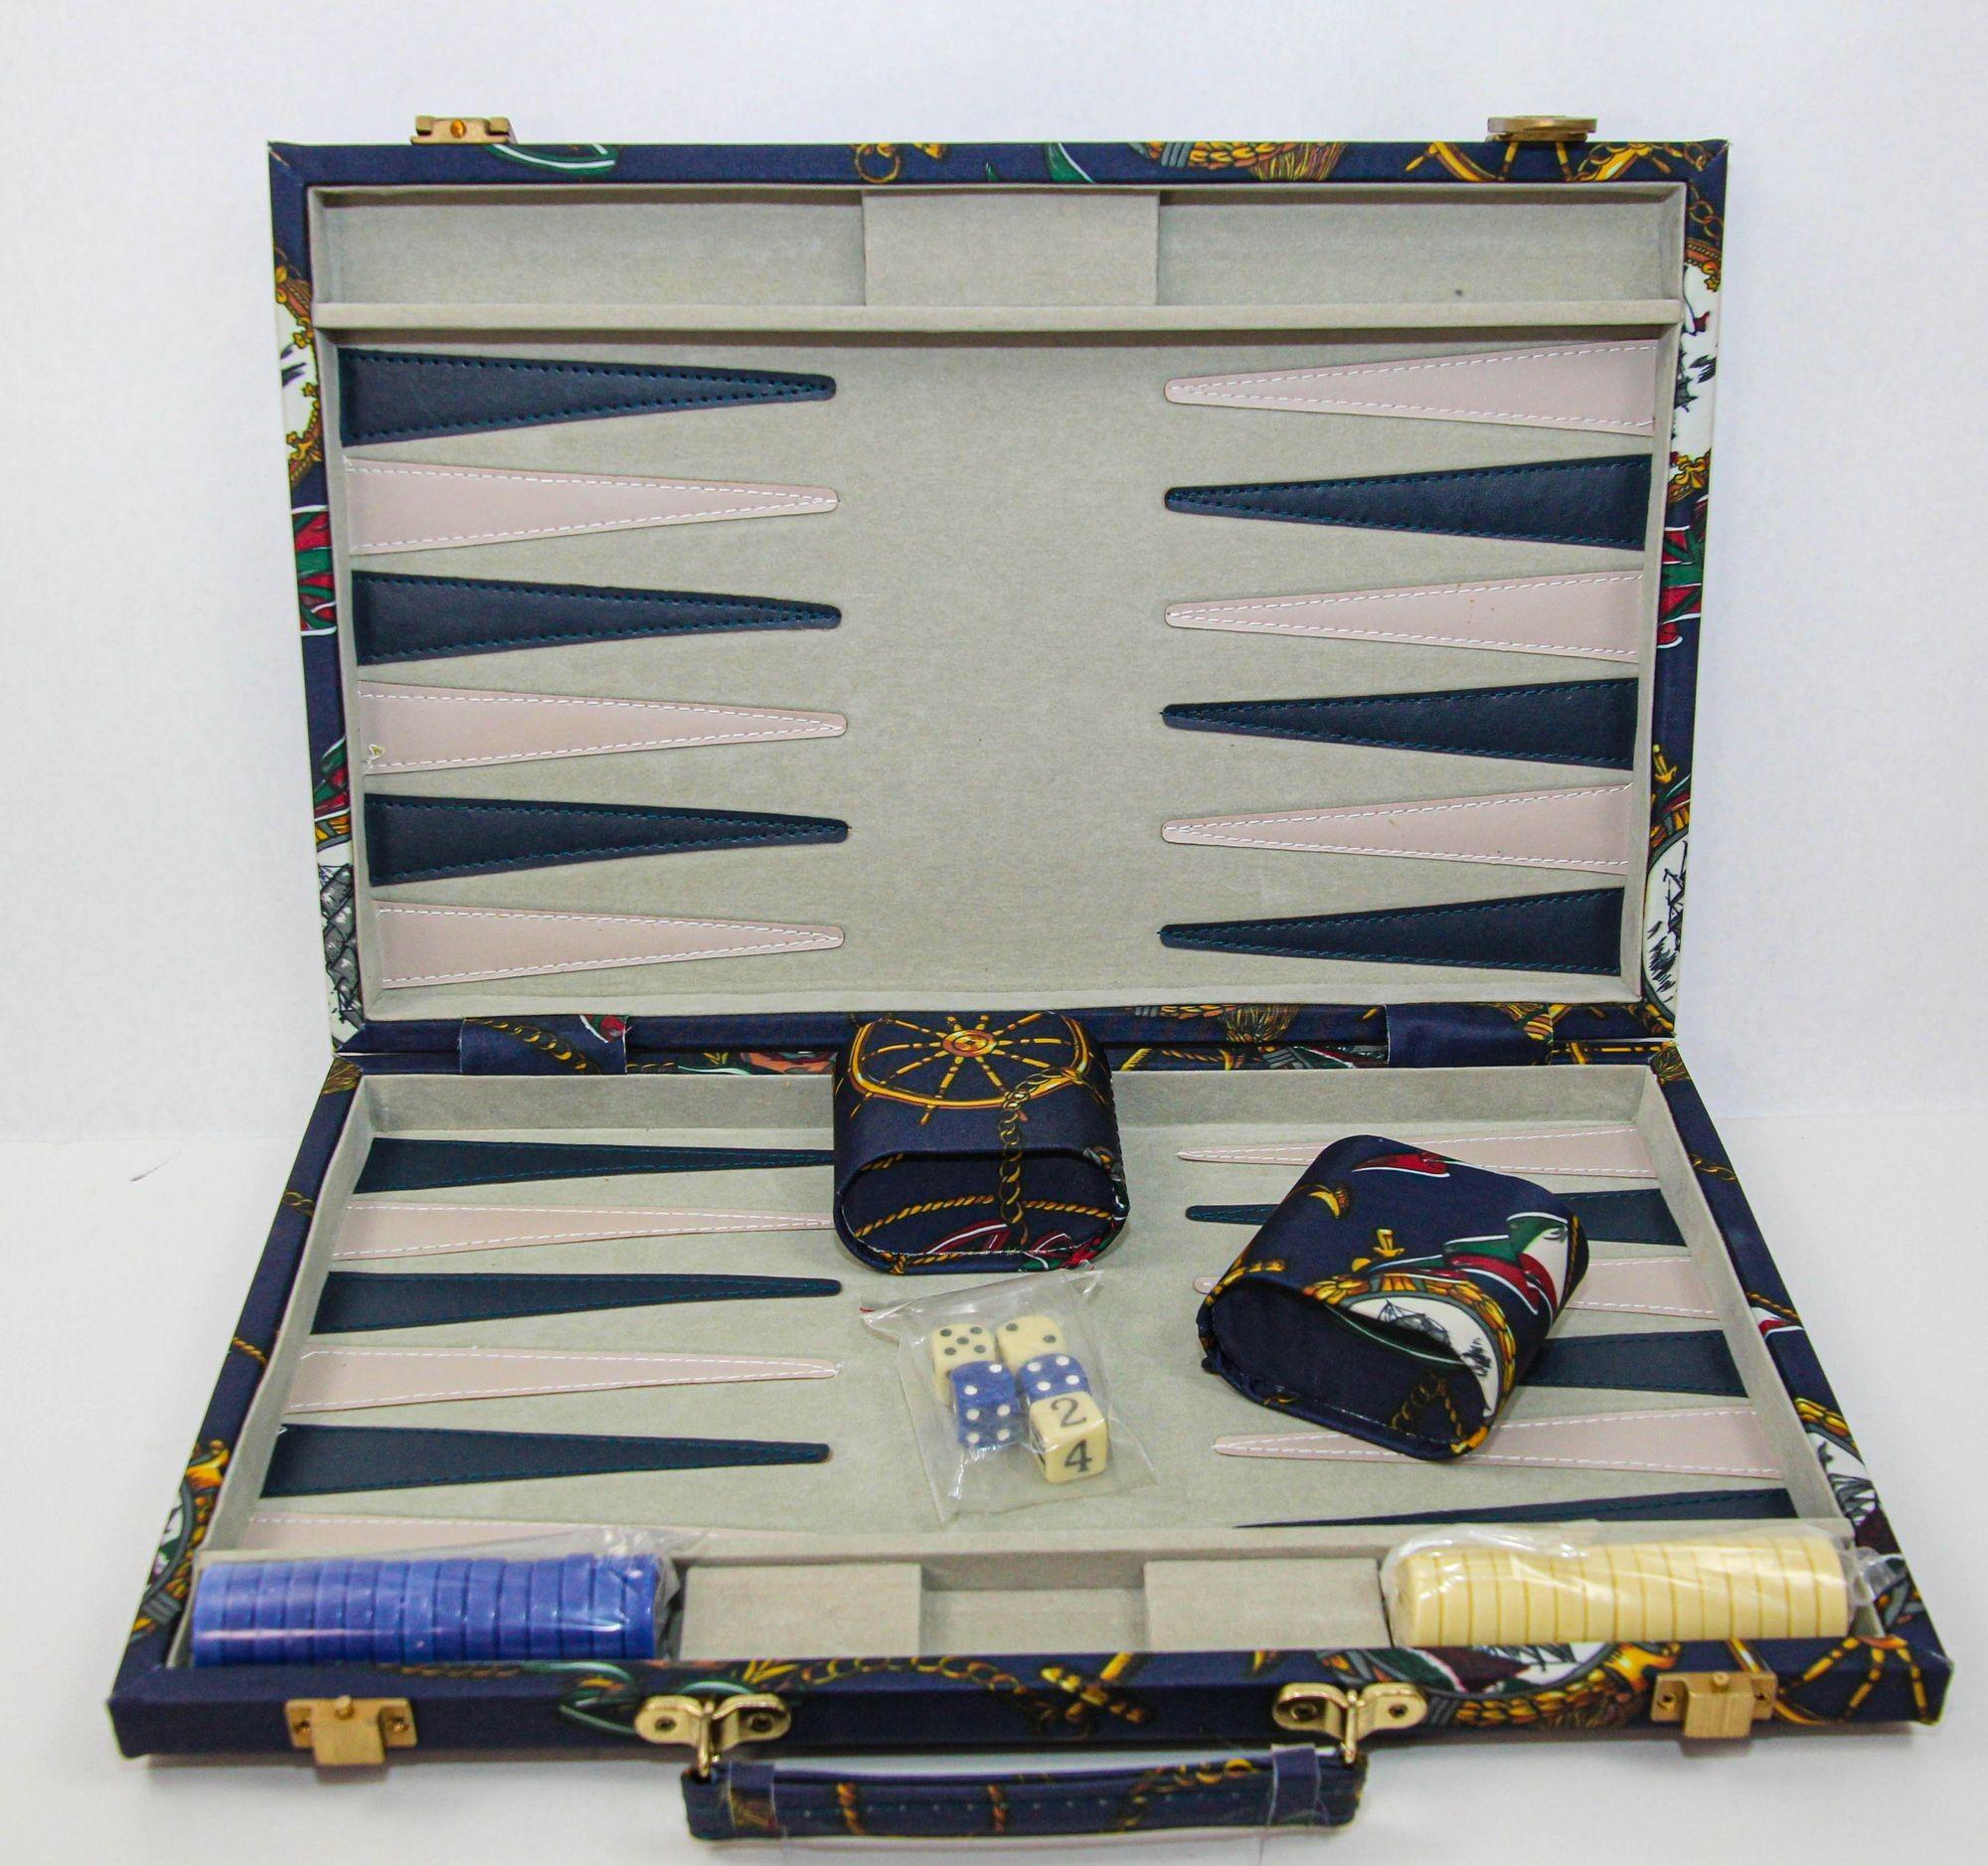 Stellen Sie sich ein opulentes, großes Backgammon-Gehäuse vor, das von der angesehenen Designästhetik von Hermes und Gucci inspiriert ist und sich auf ein raffiniertes maritimes Thema konzentriert. Das Äußere dieses exquisiten Etuis ist in